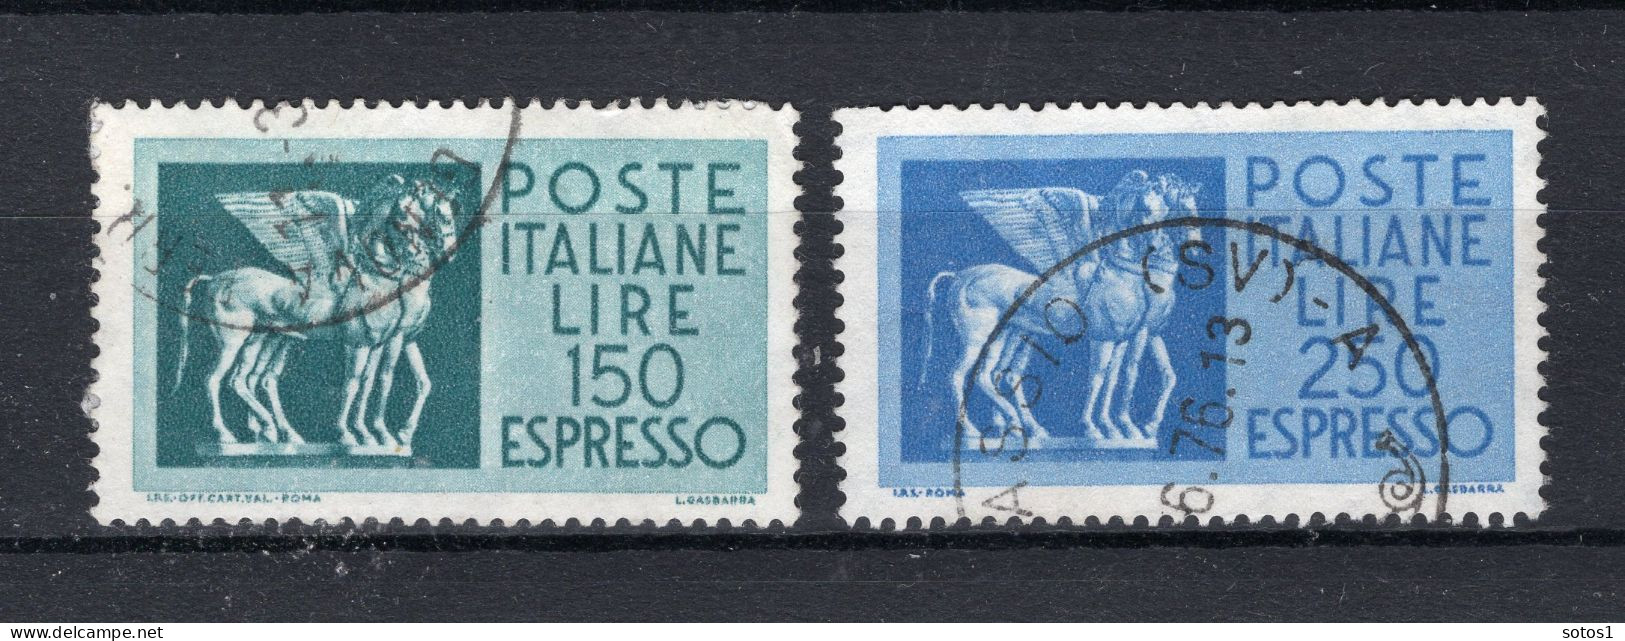 ITALIE Yt. E45/46° Gestempeld Express Zegel 1958-1966 - Poste Exprèsse/pneumatique